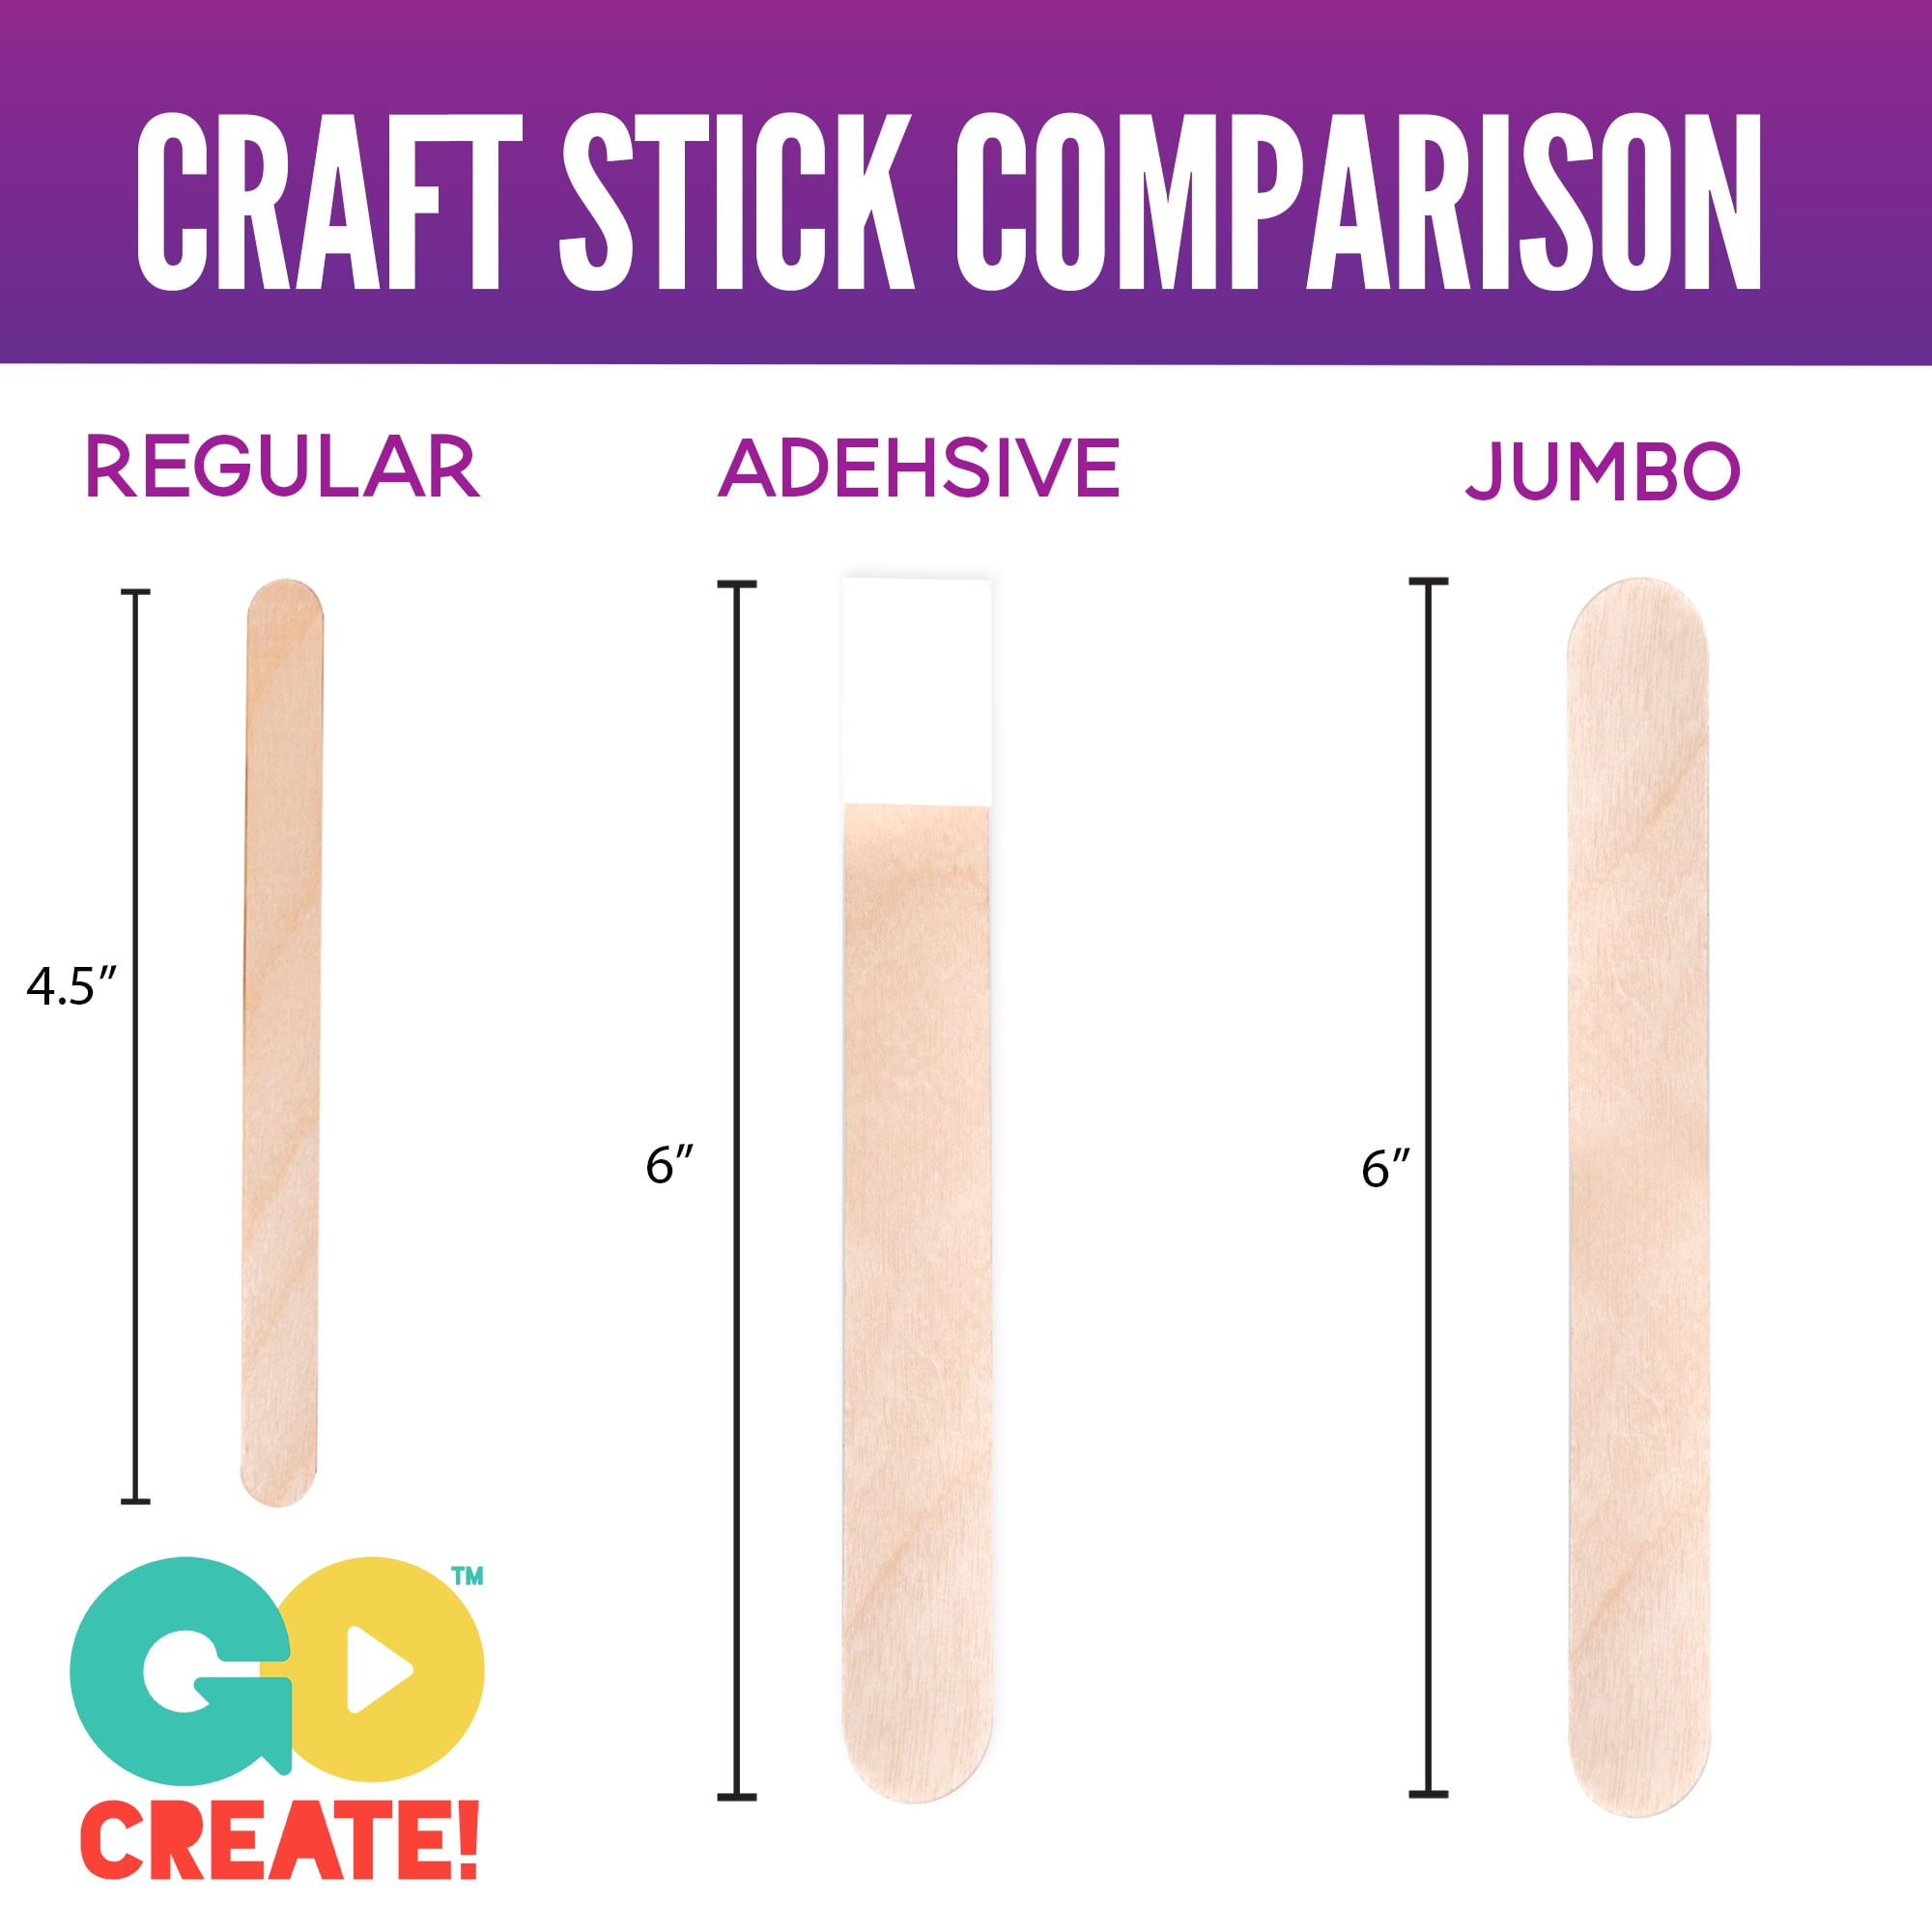 Go Create Wood Jumbo Craft Sticks, 300 Pack 